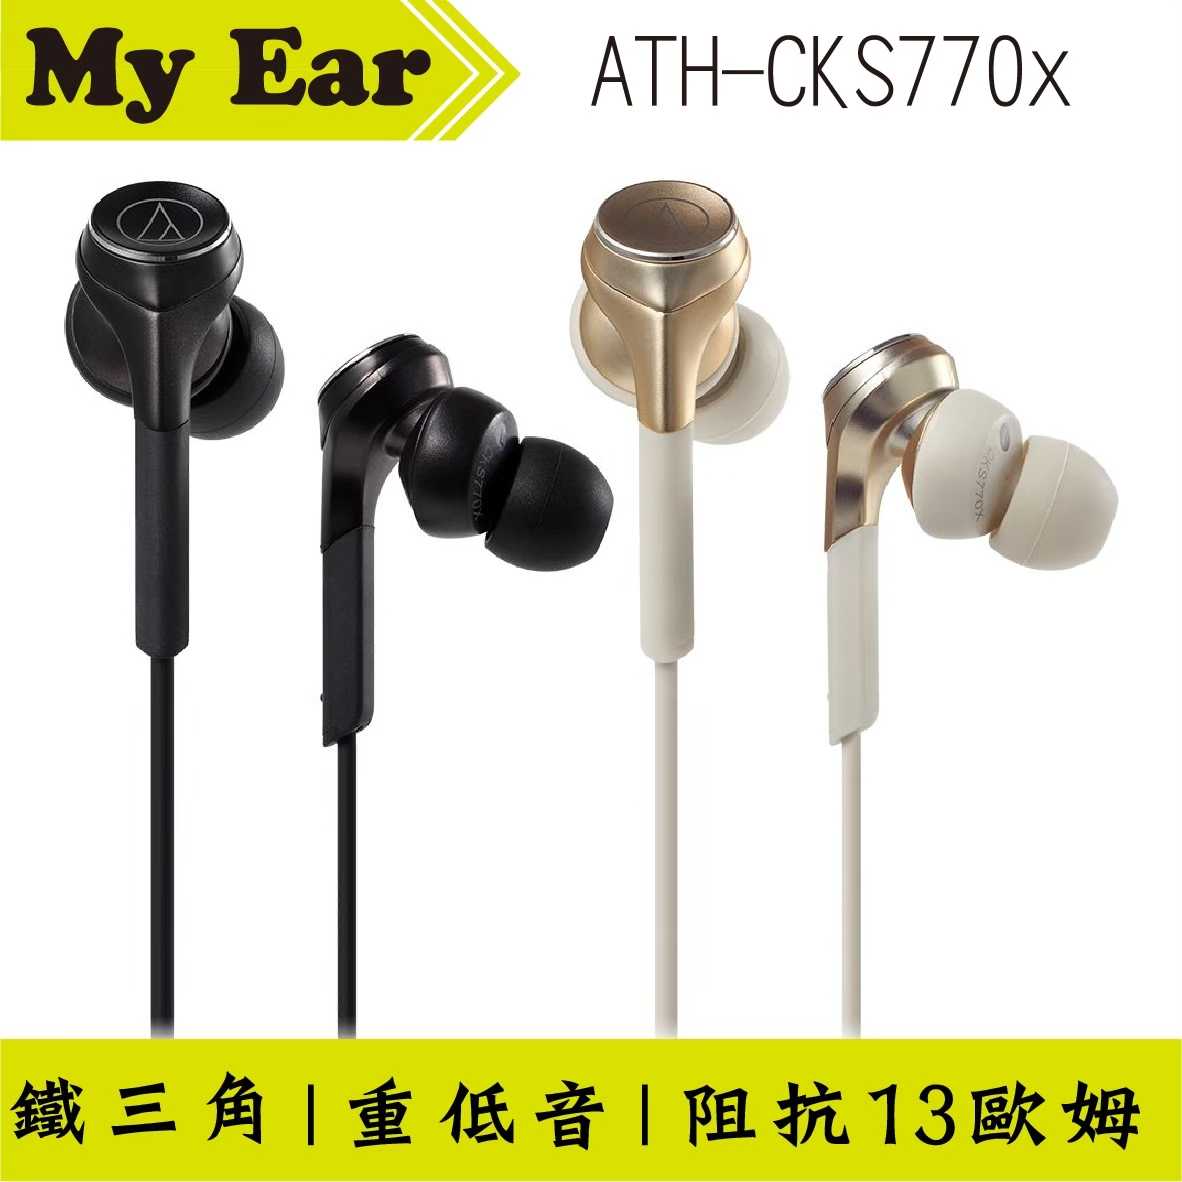 鐵三角 Cks770x 金色 重低音 耳塞式 耳機 | My Ear 耳機專門店